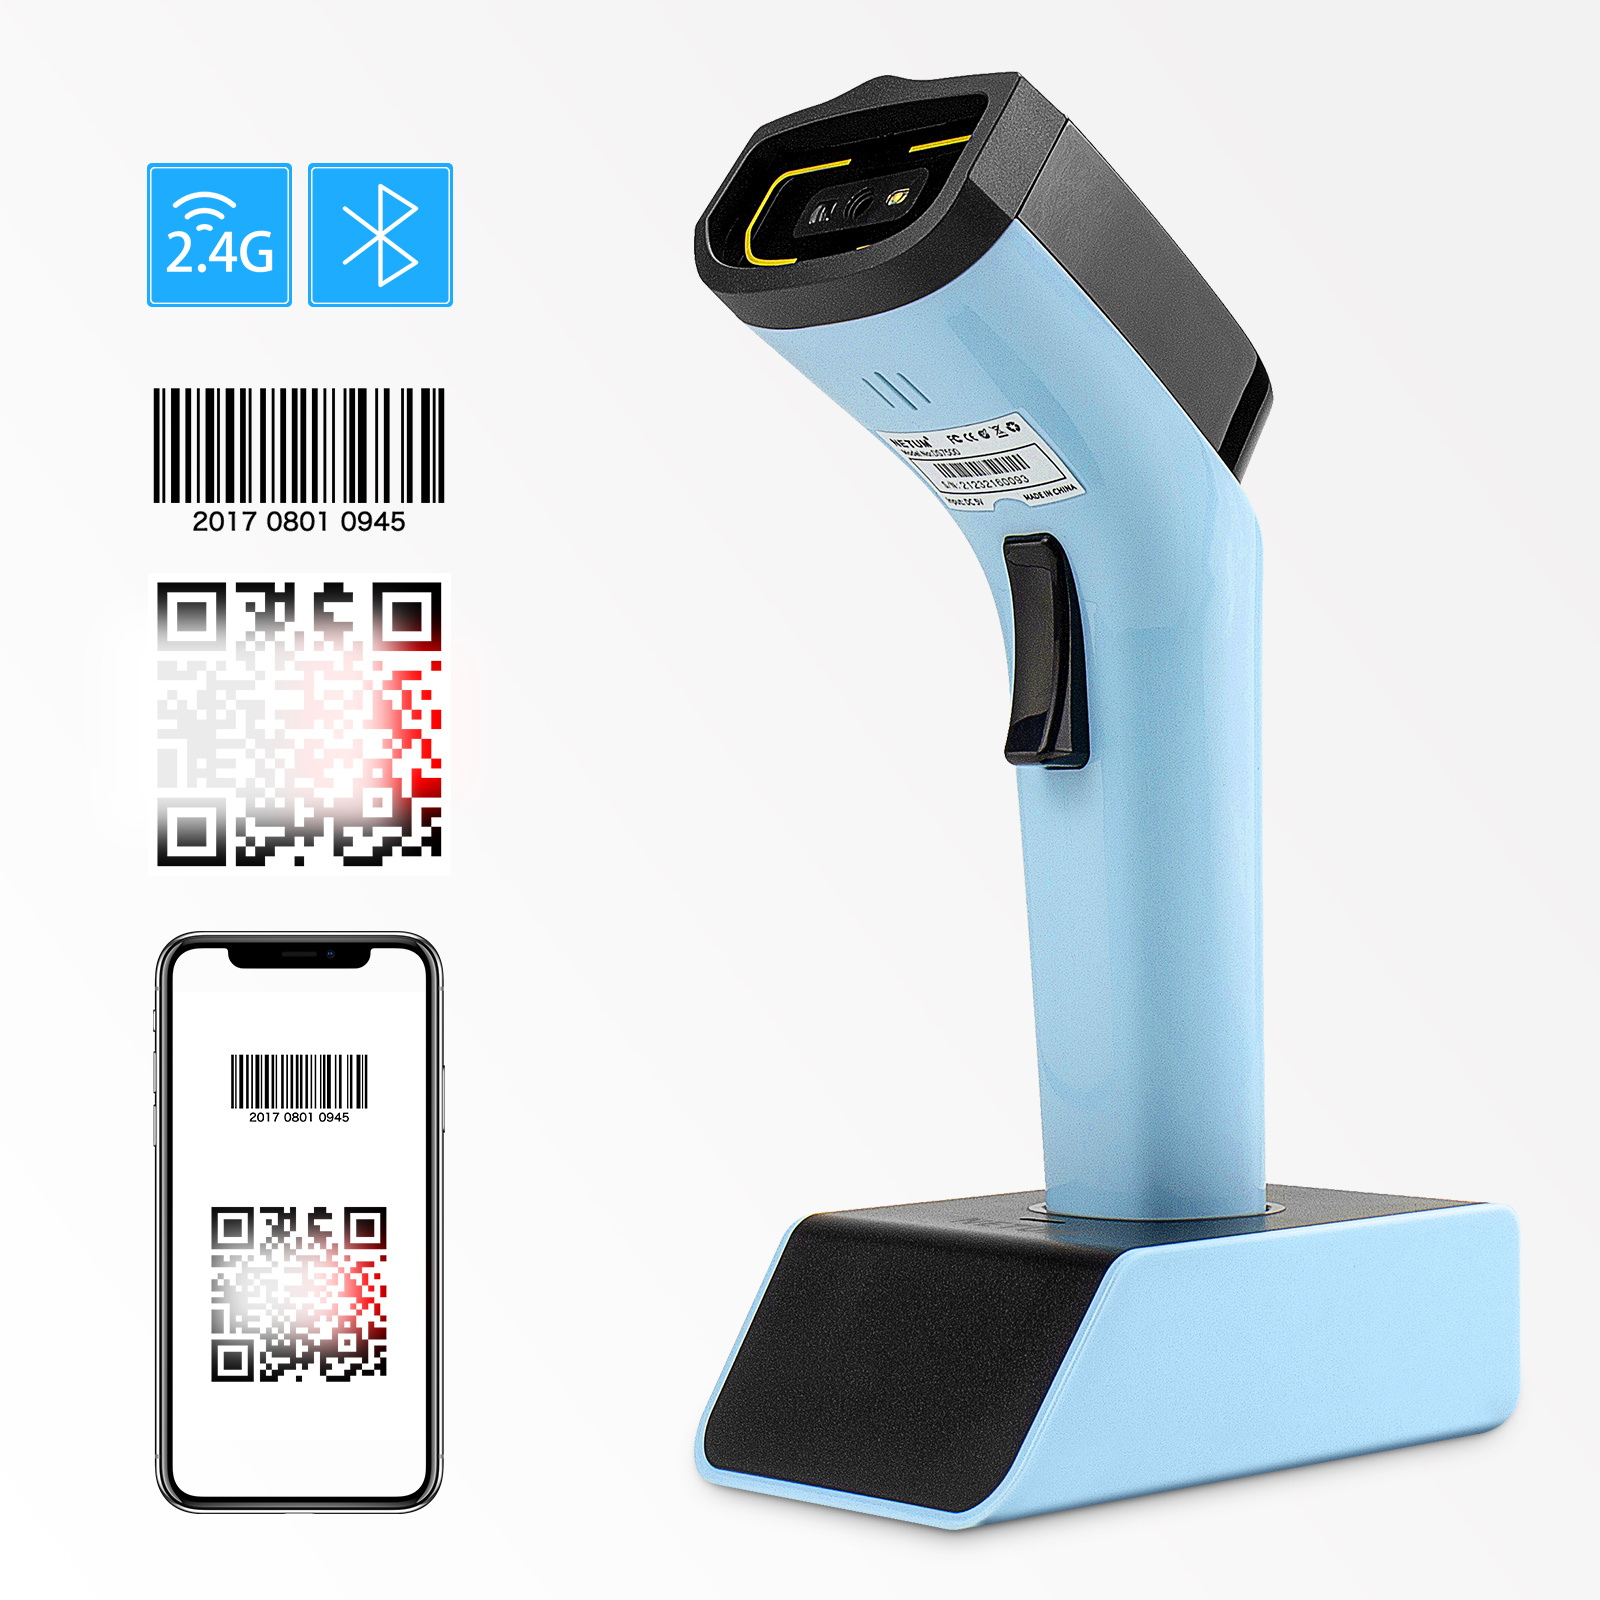 NETUM DS7500 2D Bluetooth Barcode Scanner, Hands Free Automatic Wireless QR Bar Code Reader